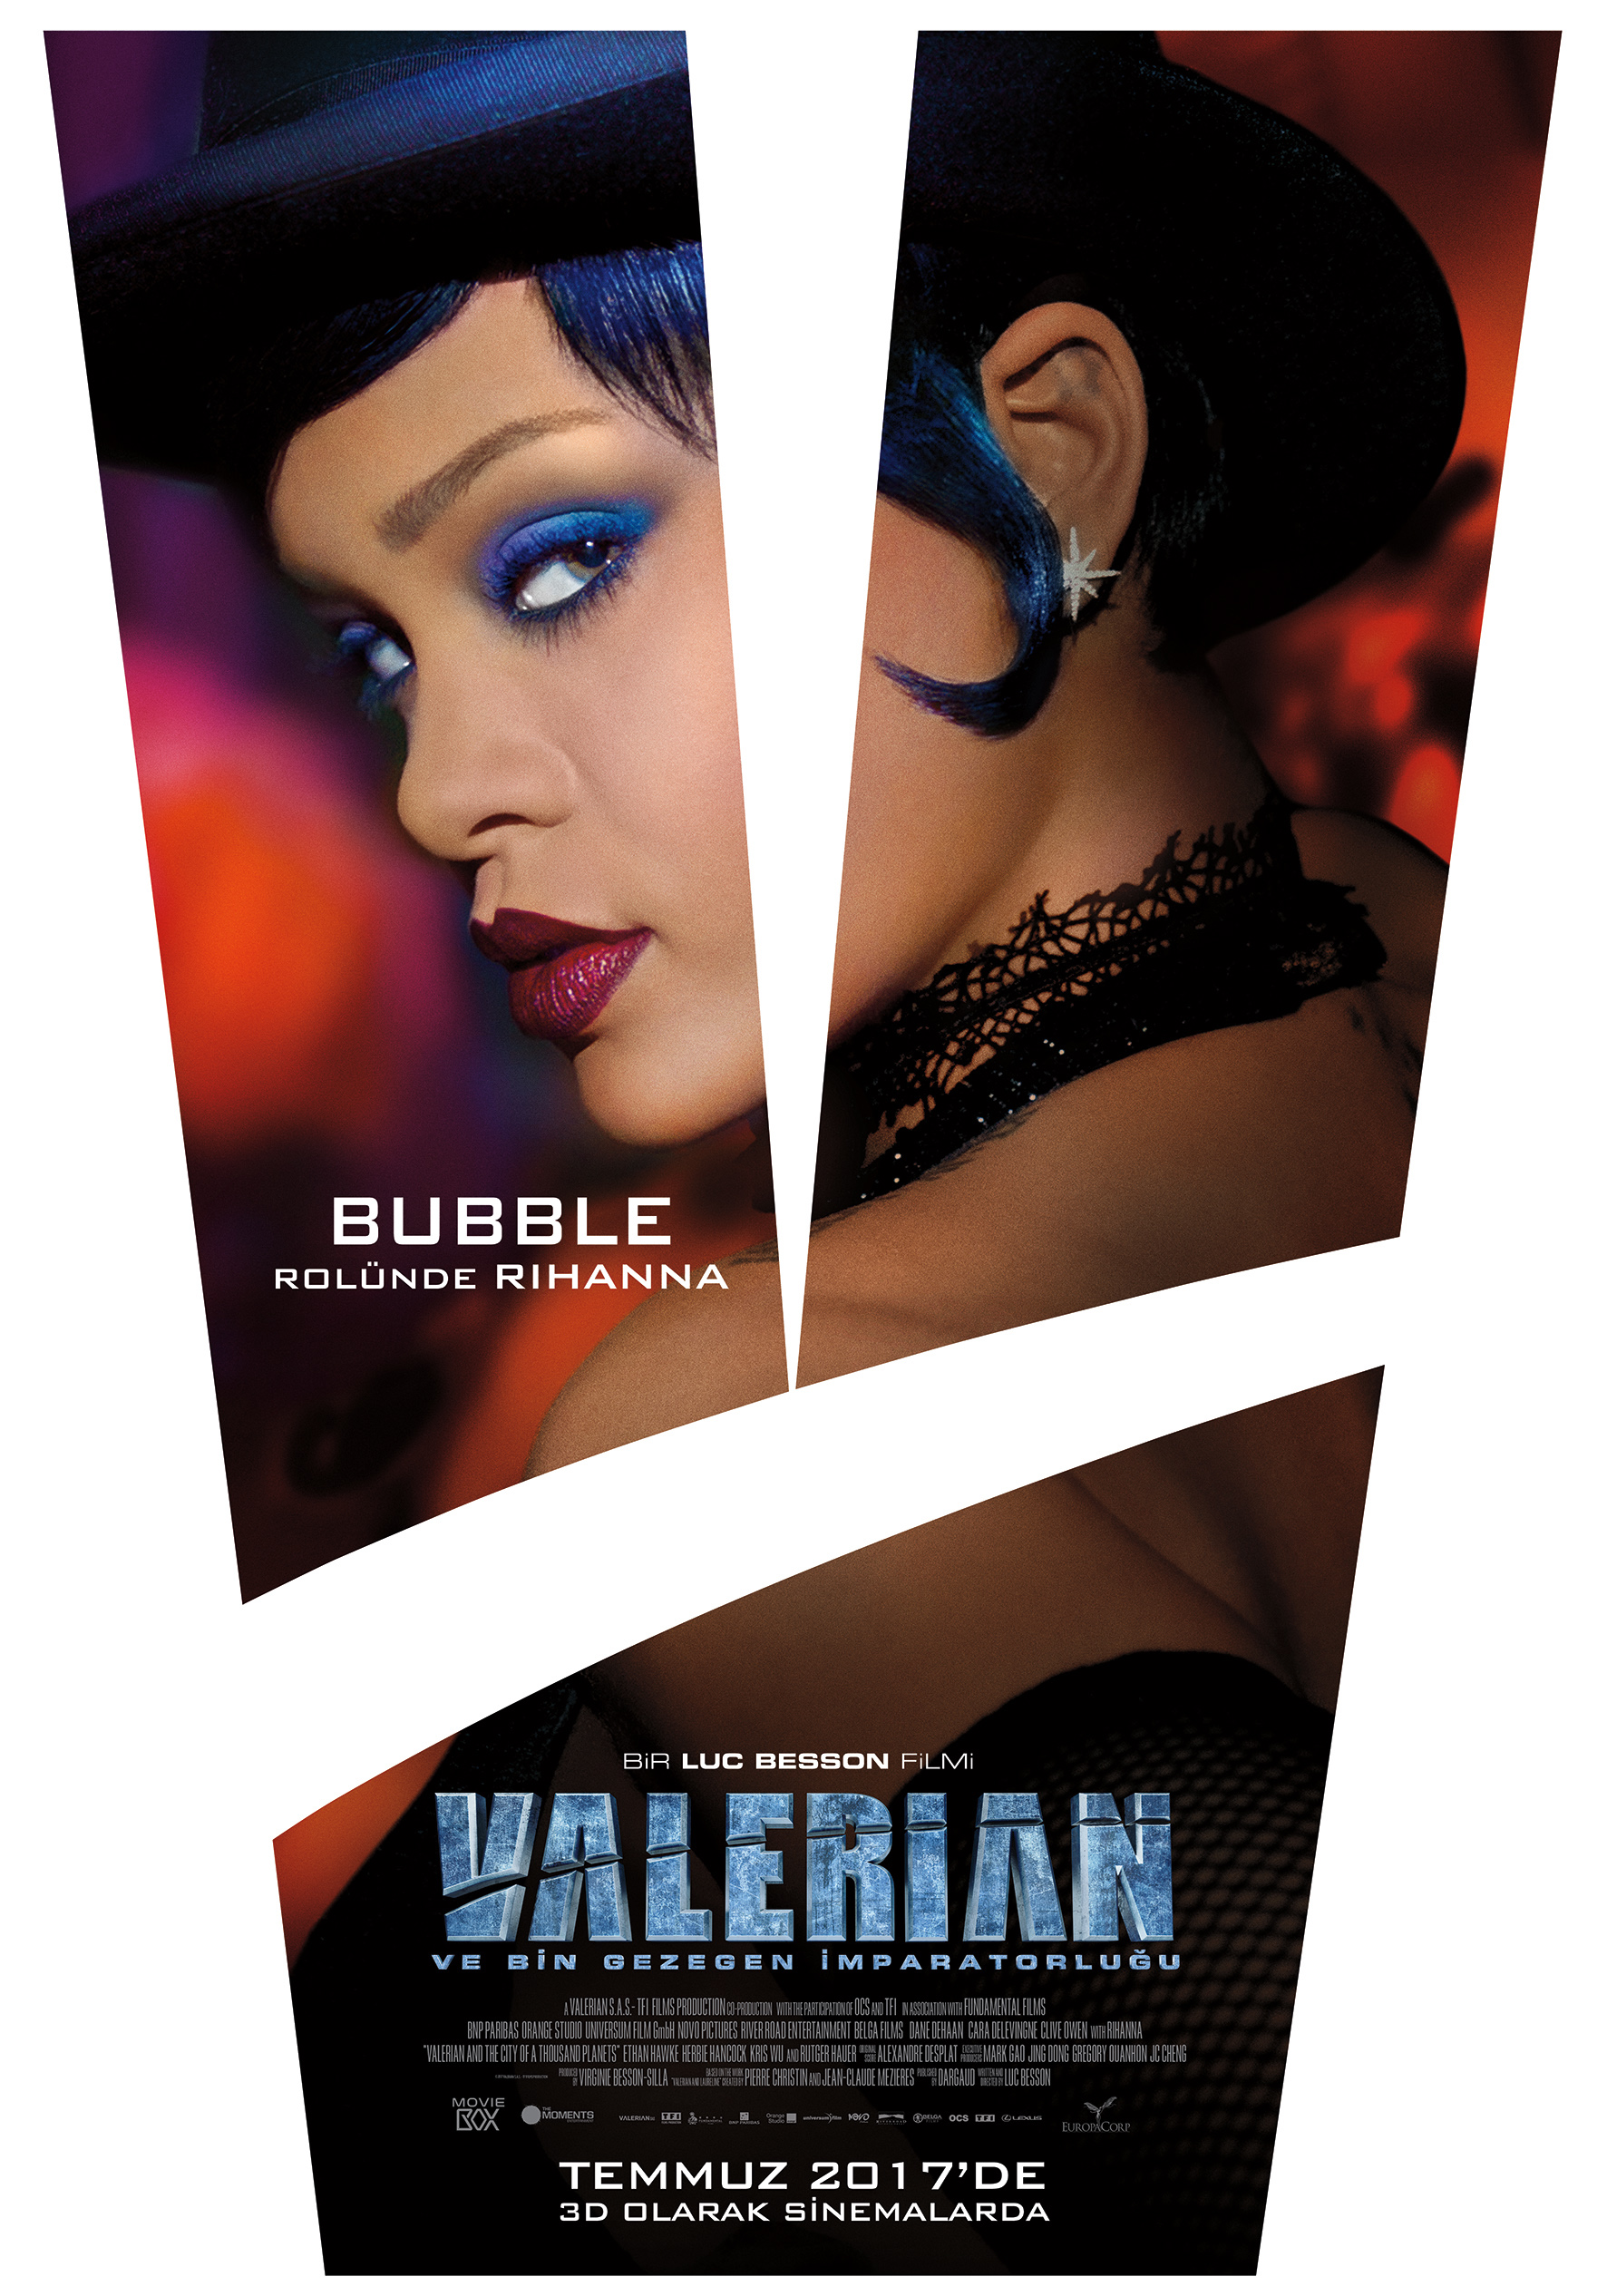 Valerian ve Bin Gezegen İmparatorluğu 4 – Valerian Karakter Afisleri Bubble